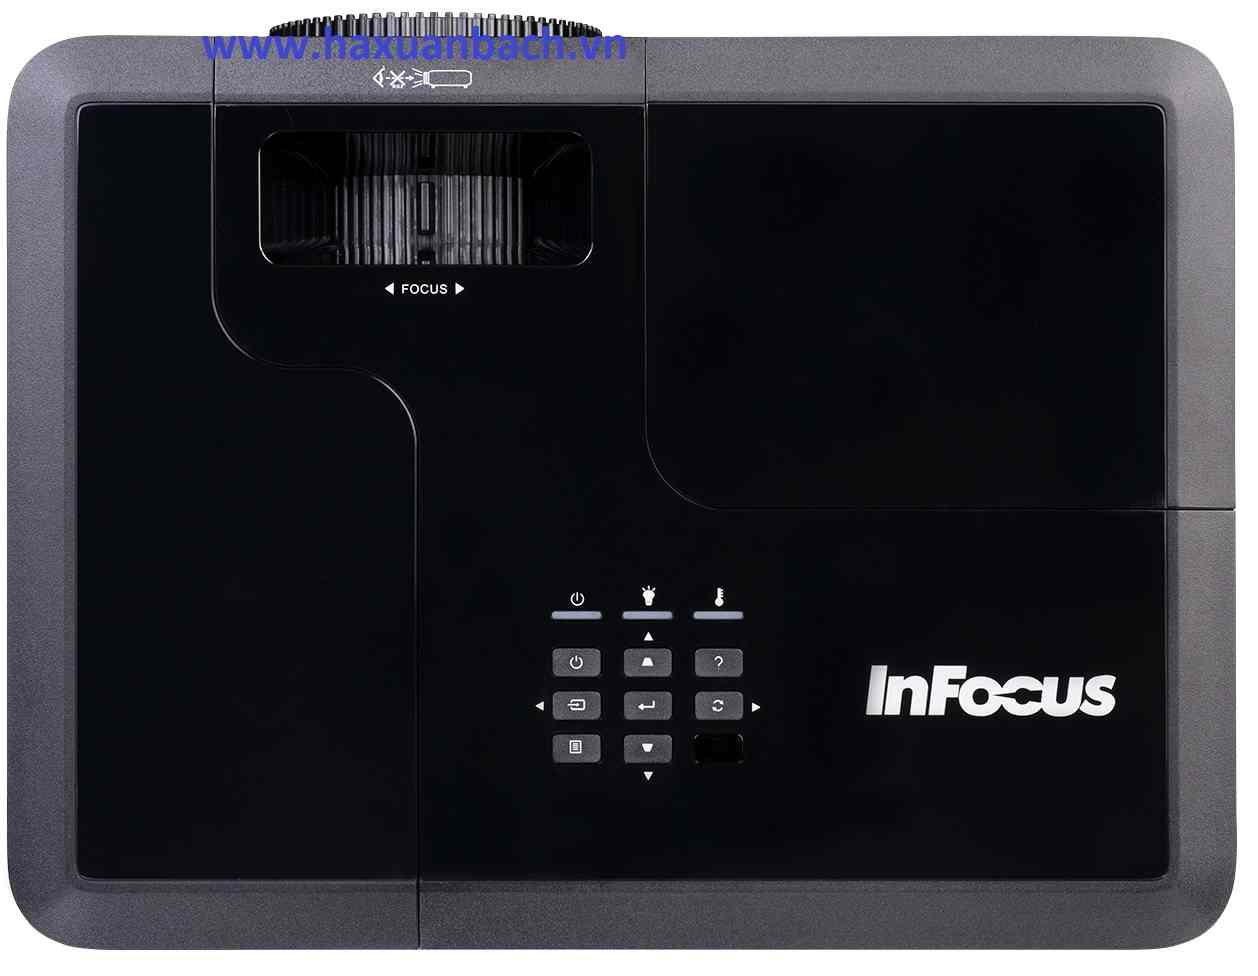 Máy chiếu Infocus IN134 có thiết kế hiện đại sang trọng